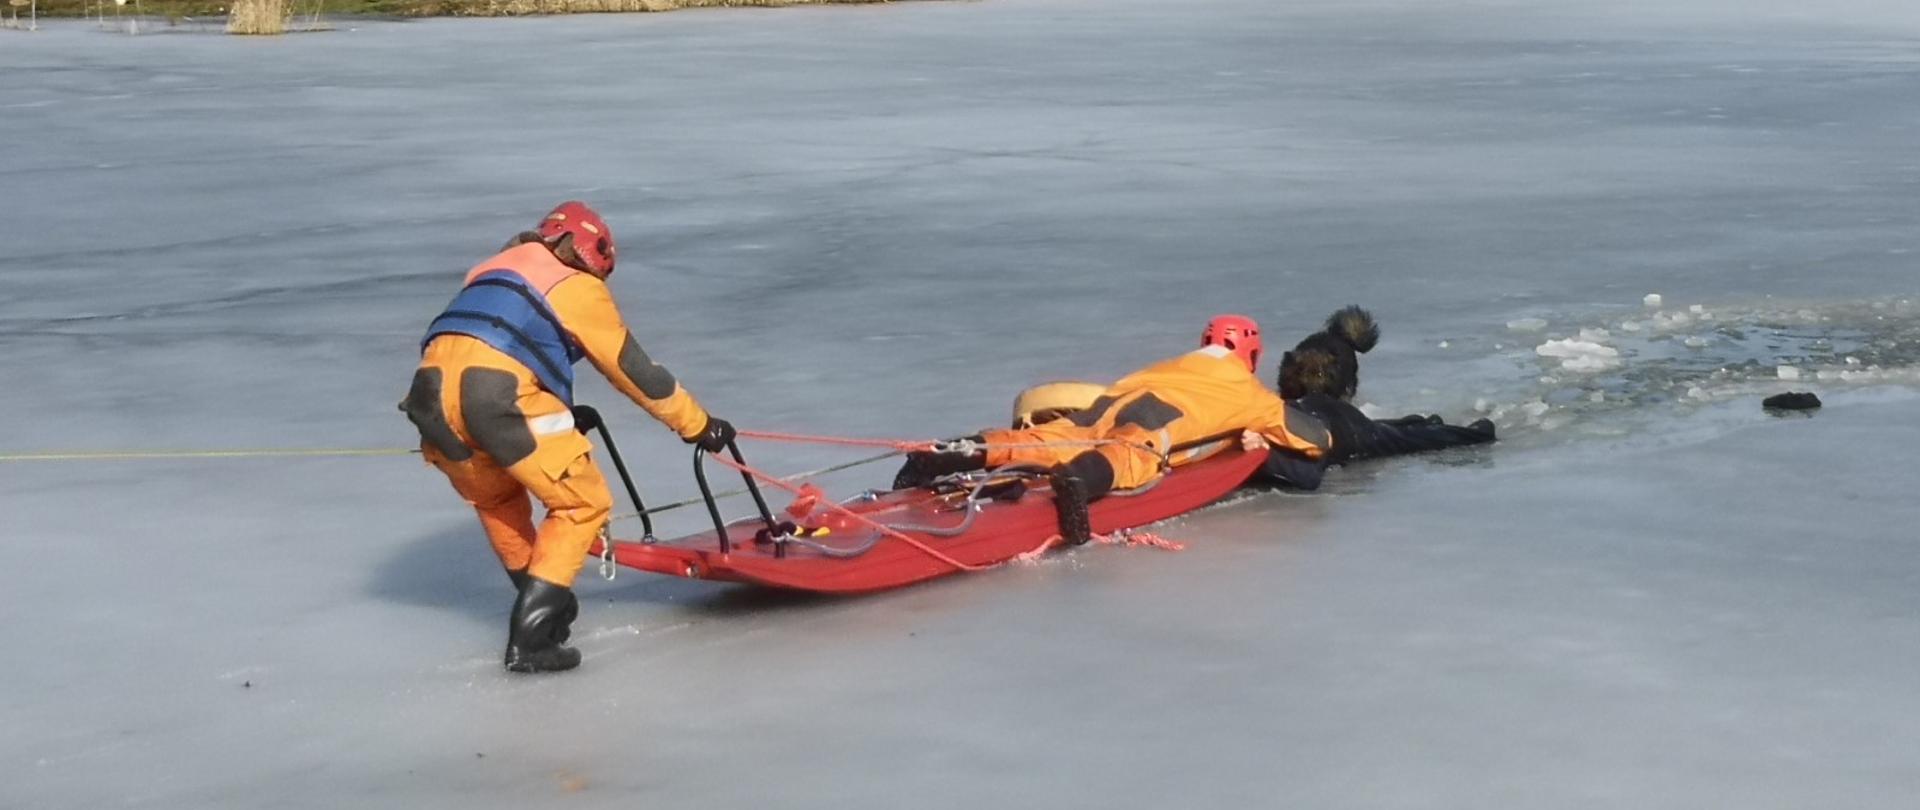 Zdjęcie przedstawia dwóch ratowników PSP z saniami wodno-lodowymi w trakcie ewakuacji mężczyzny z wody.